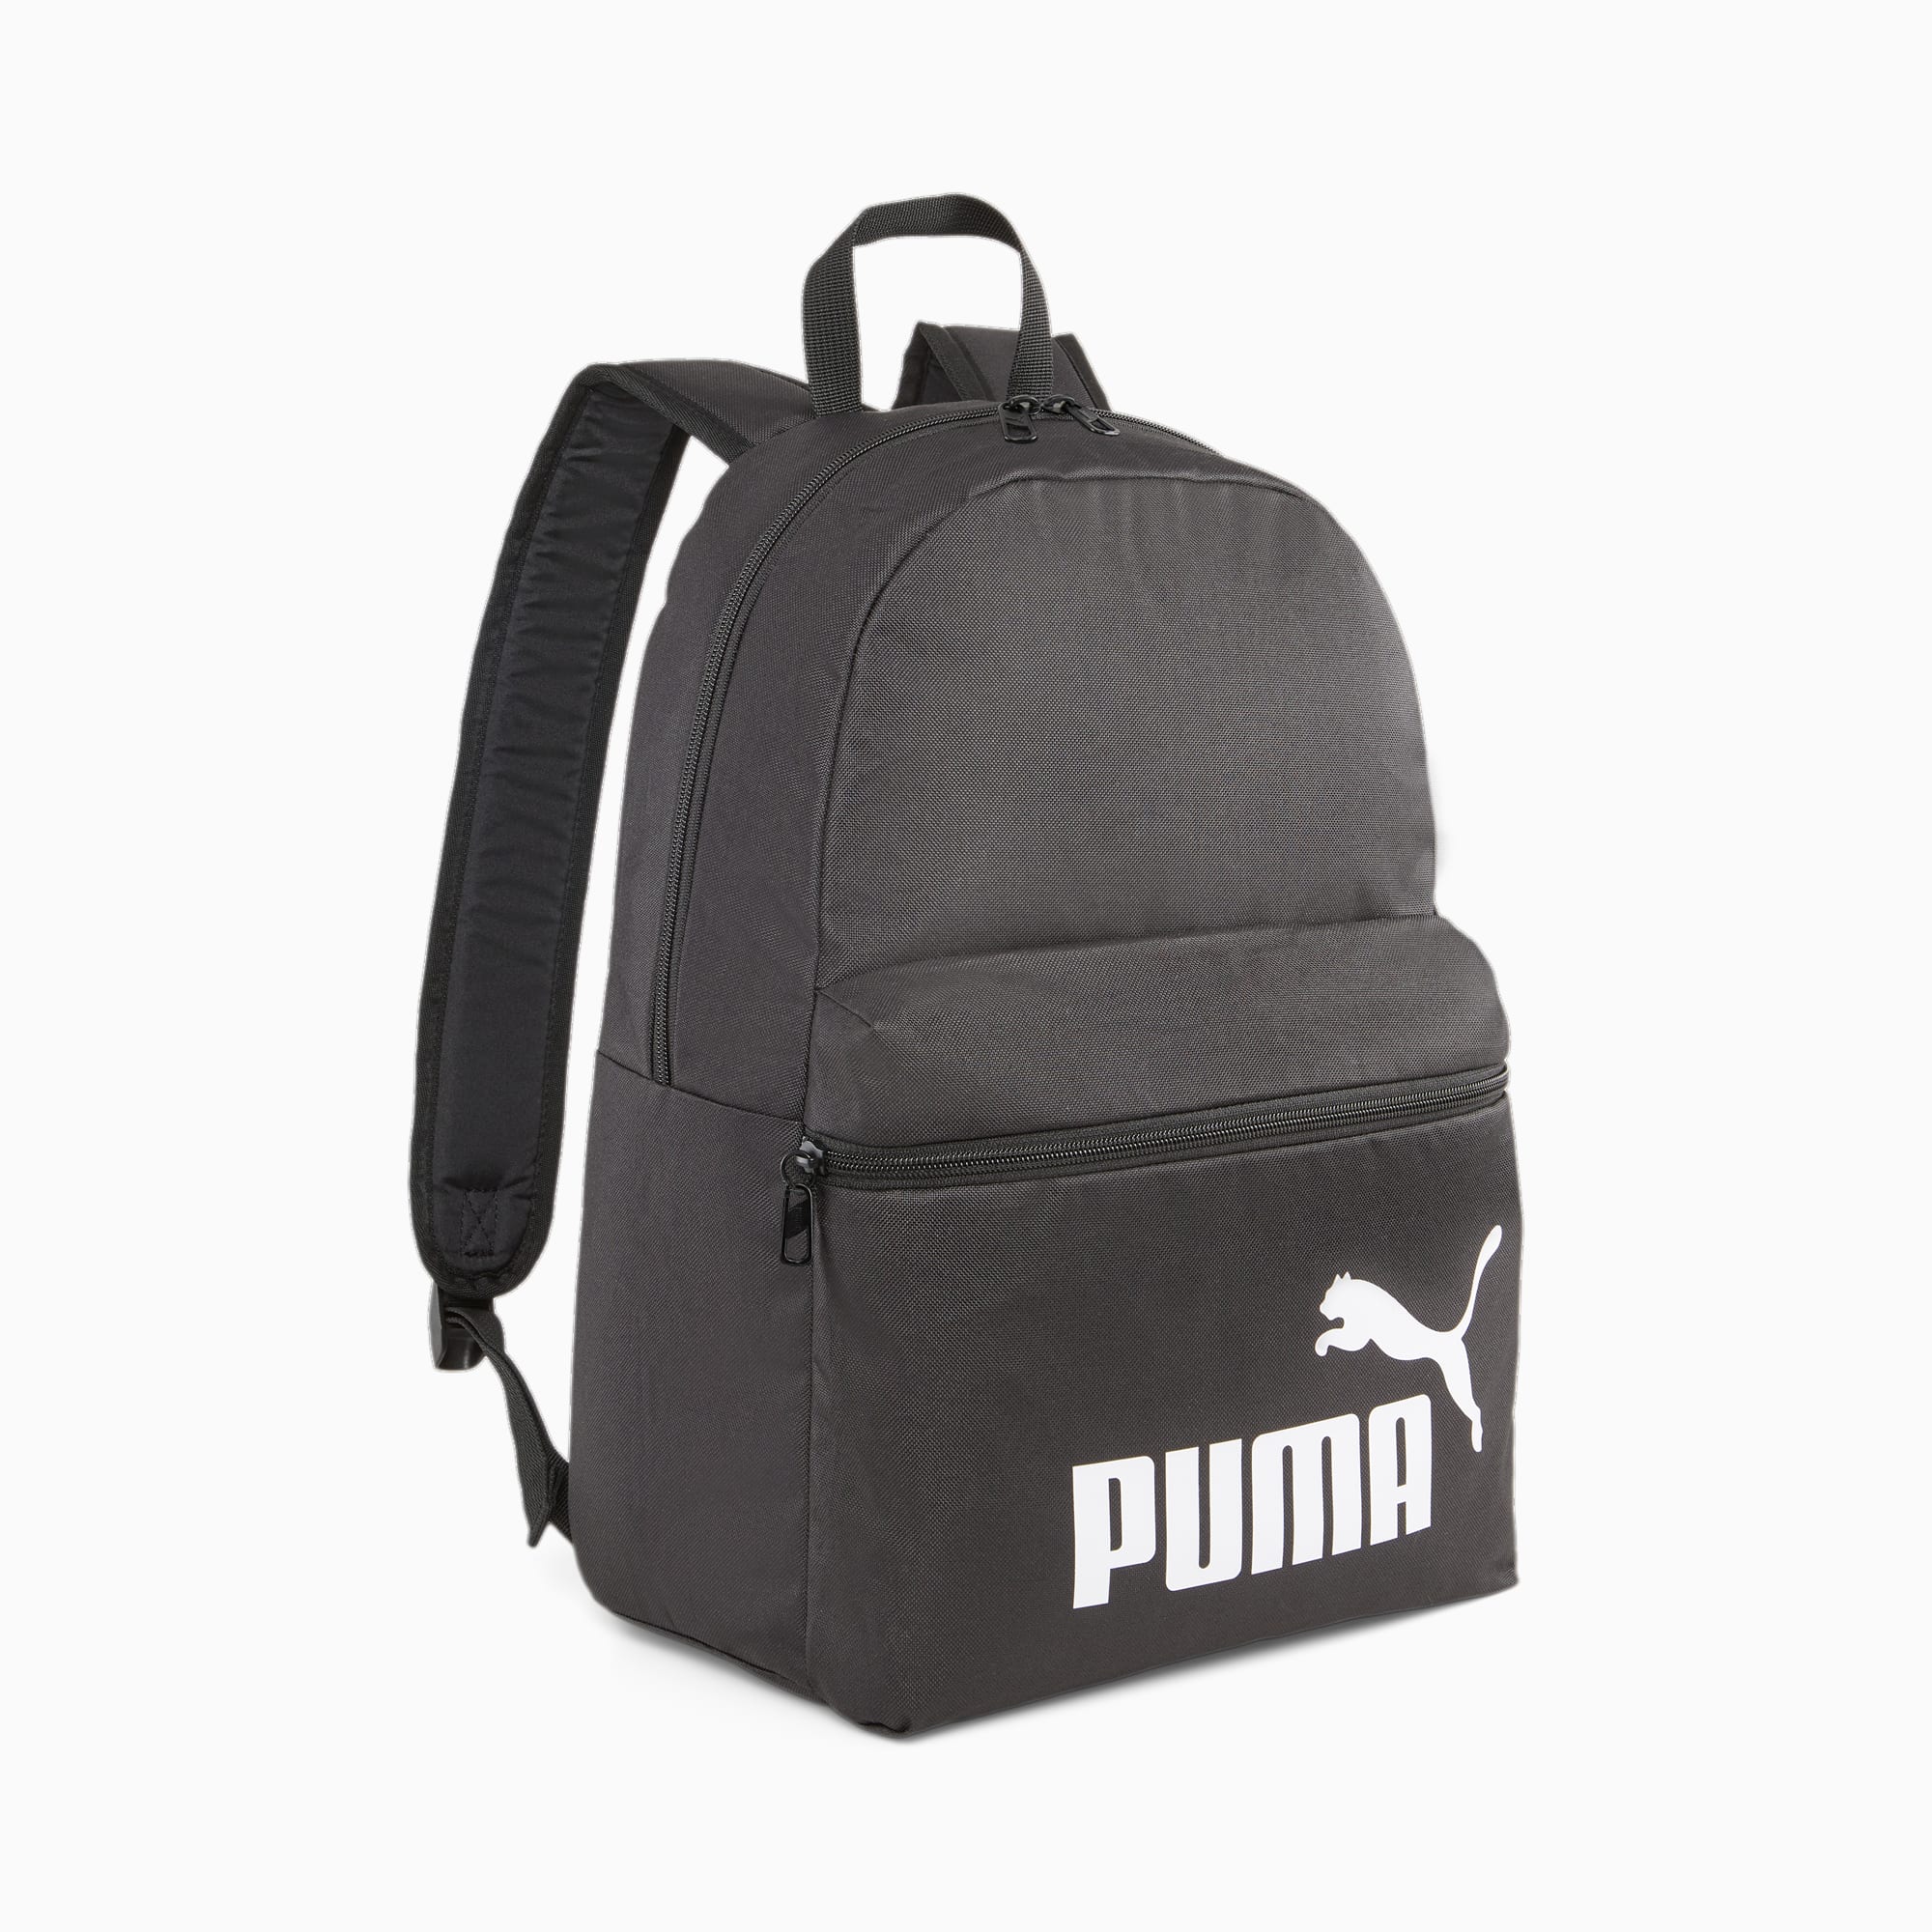 Puma Sac à dos - Phase Backpack (Noir) - Sacs à dos chez Sarenza (336399)